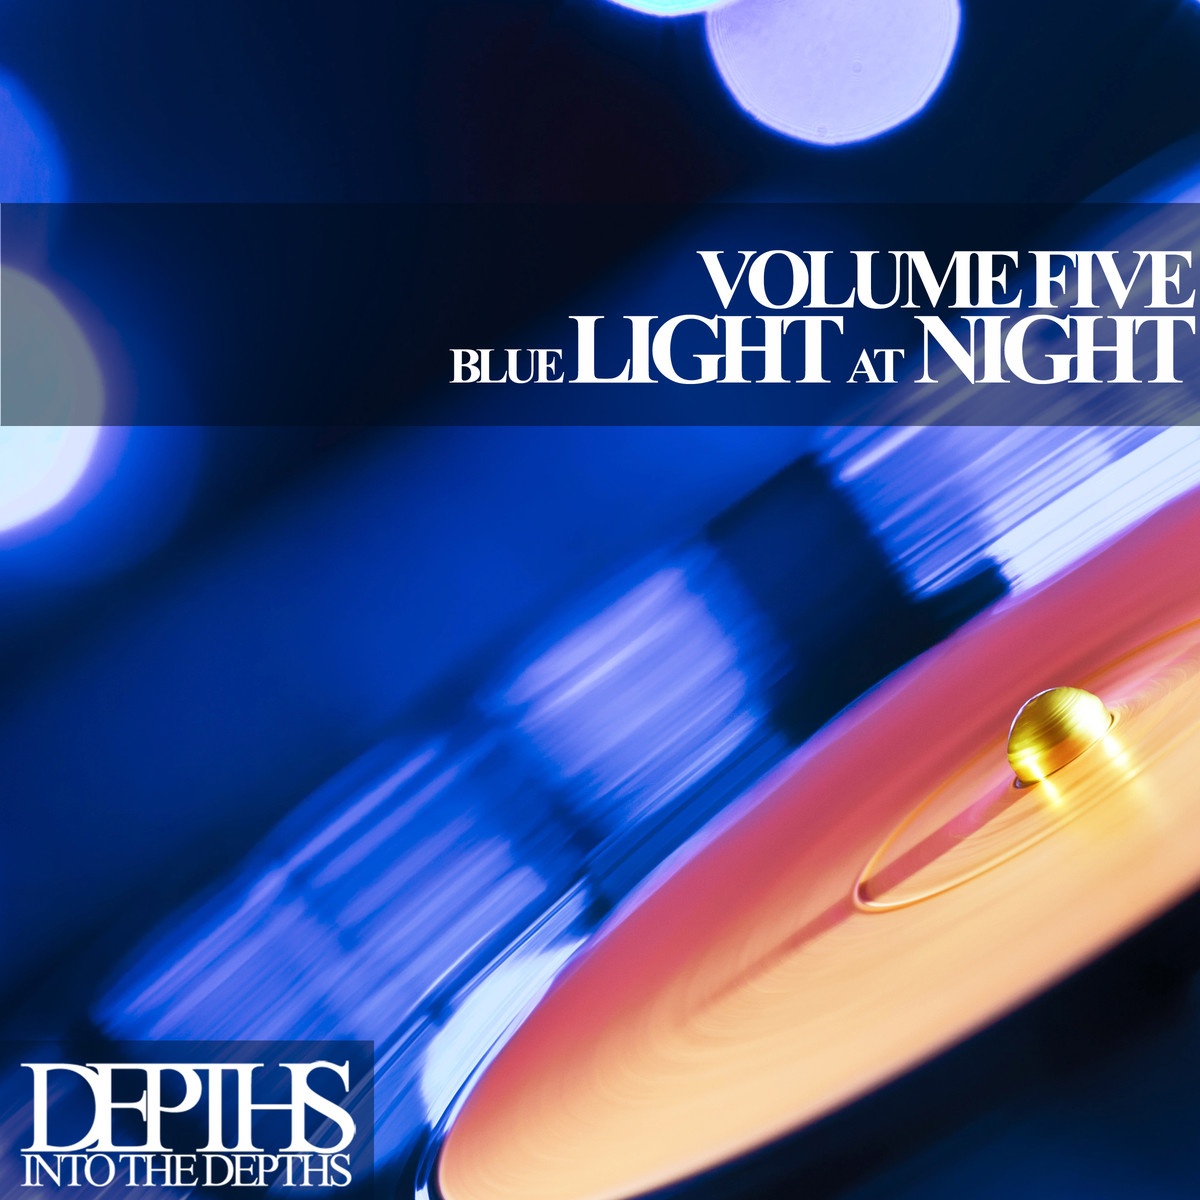 Blue Light At Night, Vol. Five - First Class Deep House Blends